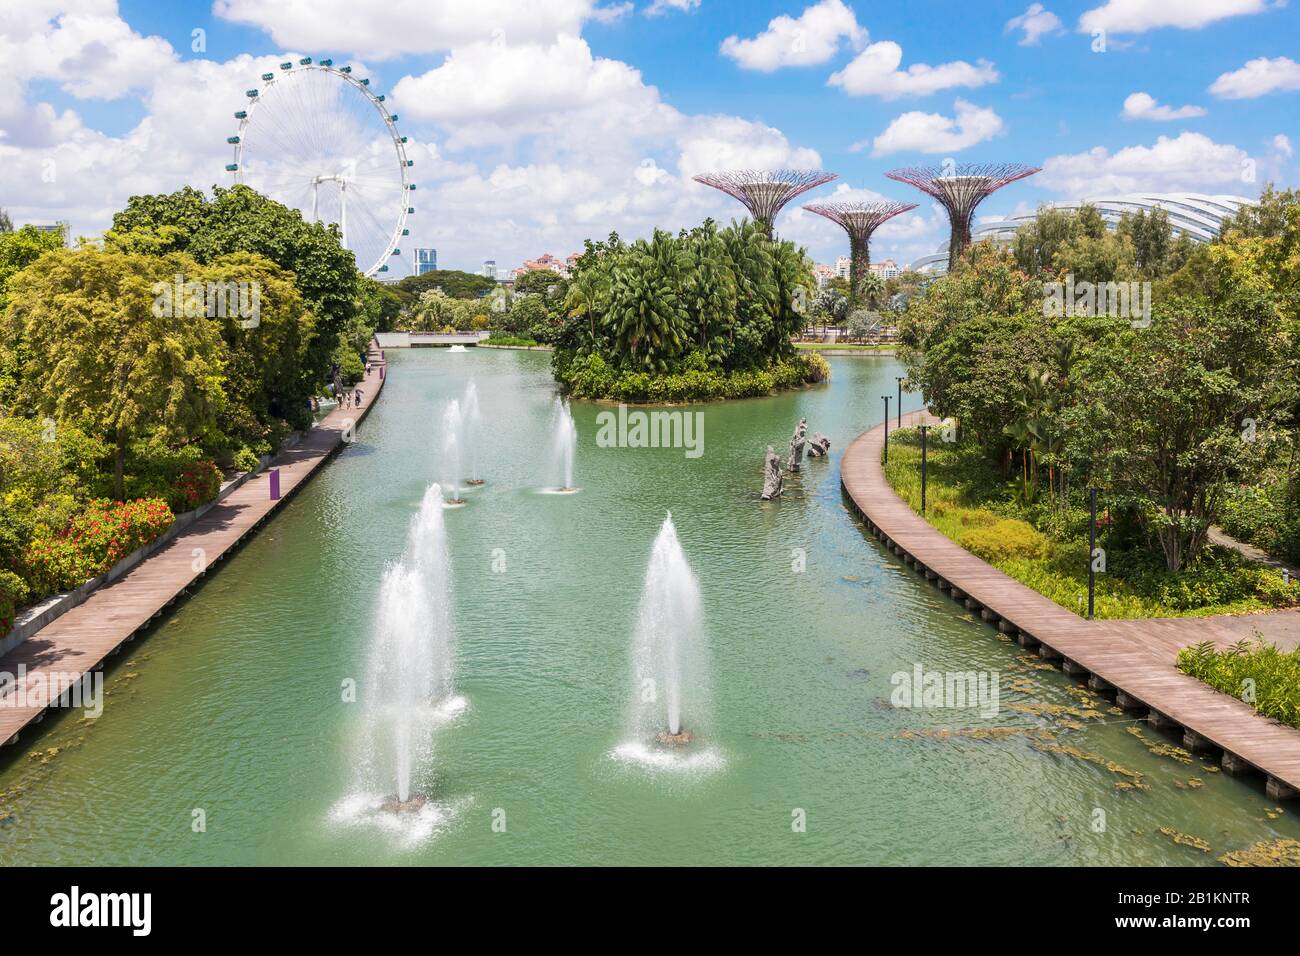 Fuentes de agua en el parque público, Jardines en la Bahía con el Singapore Flyer y rascacielos en el horizonte, Singapur, Asia Foto de stock